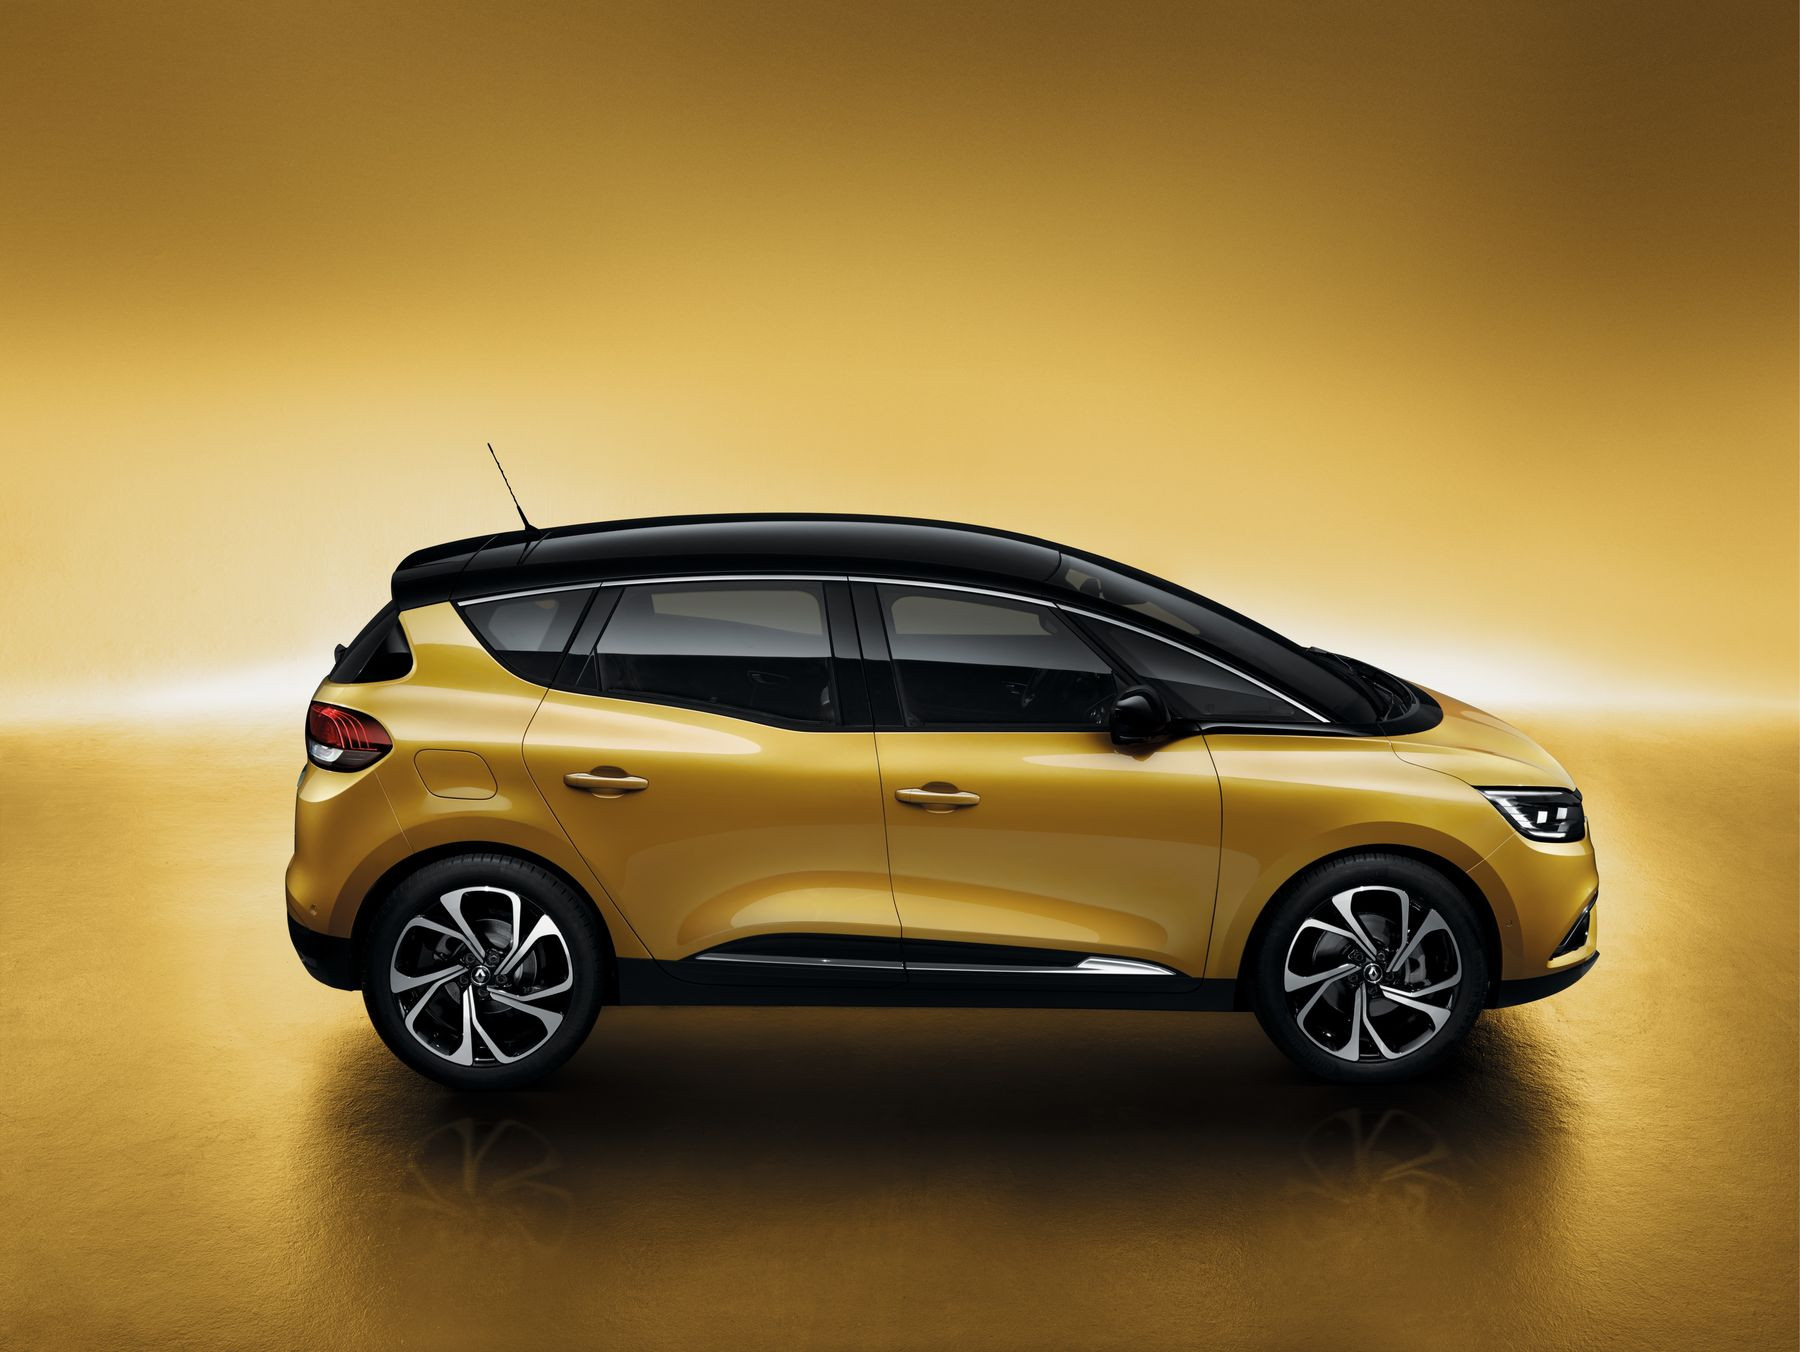 Τα πολυμορφικά «τραγουδάνε» ακόμα: Νέο Renault Scenic